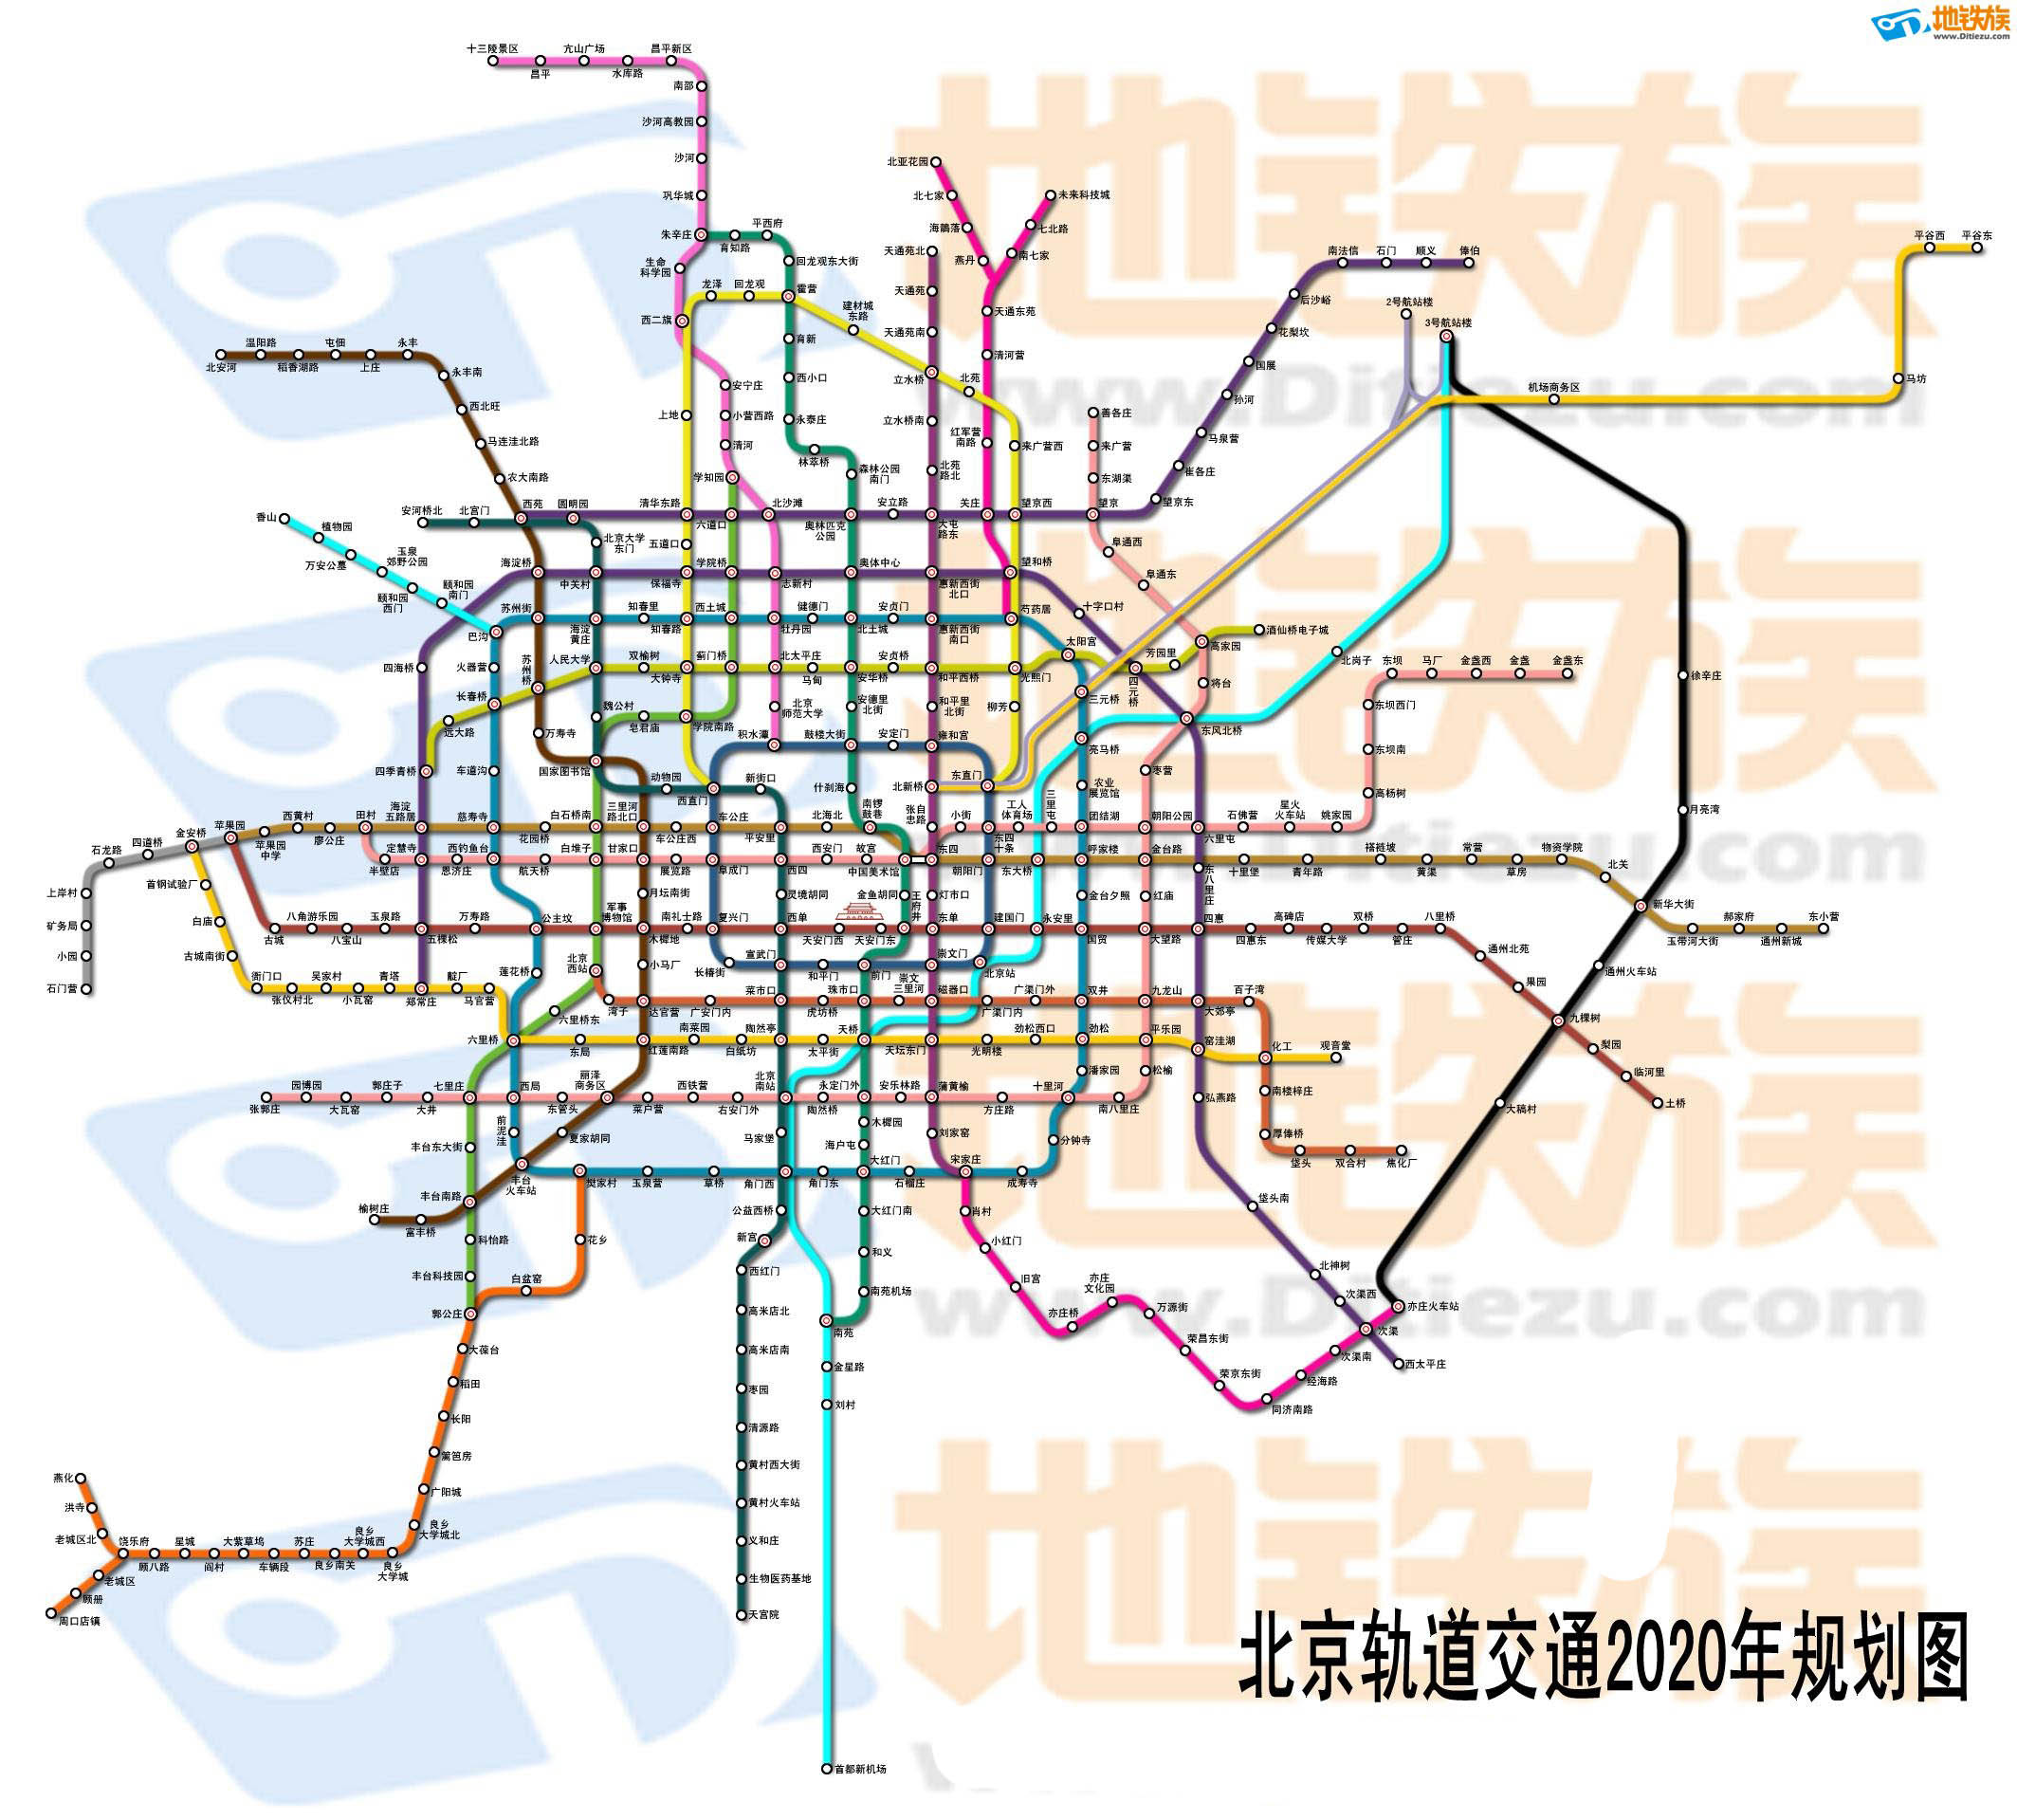 北京轨道交通2020规划图——东北加密线的位置很悲剧!